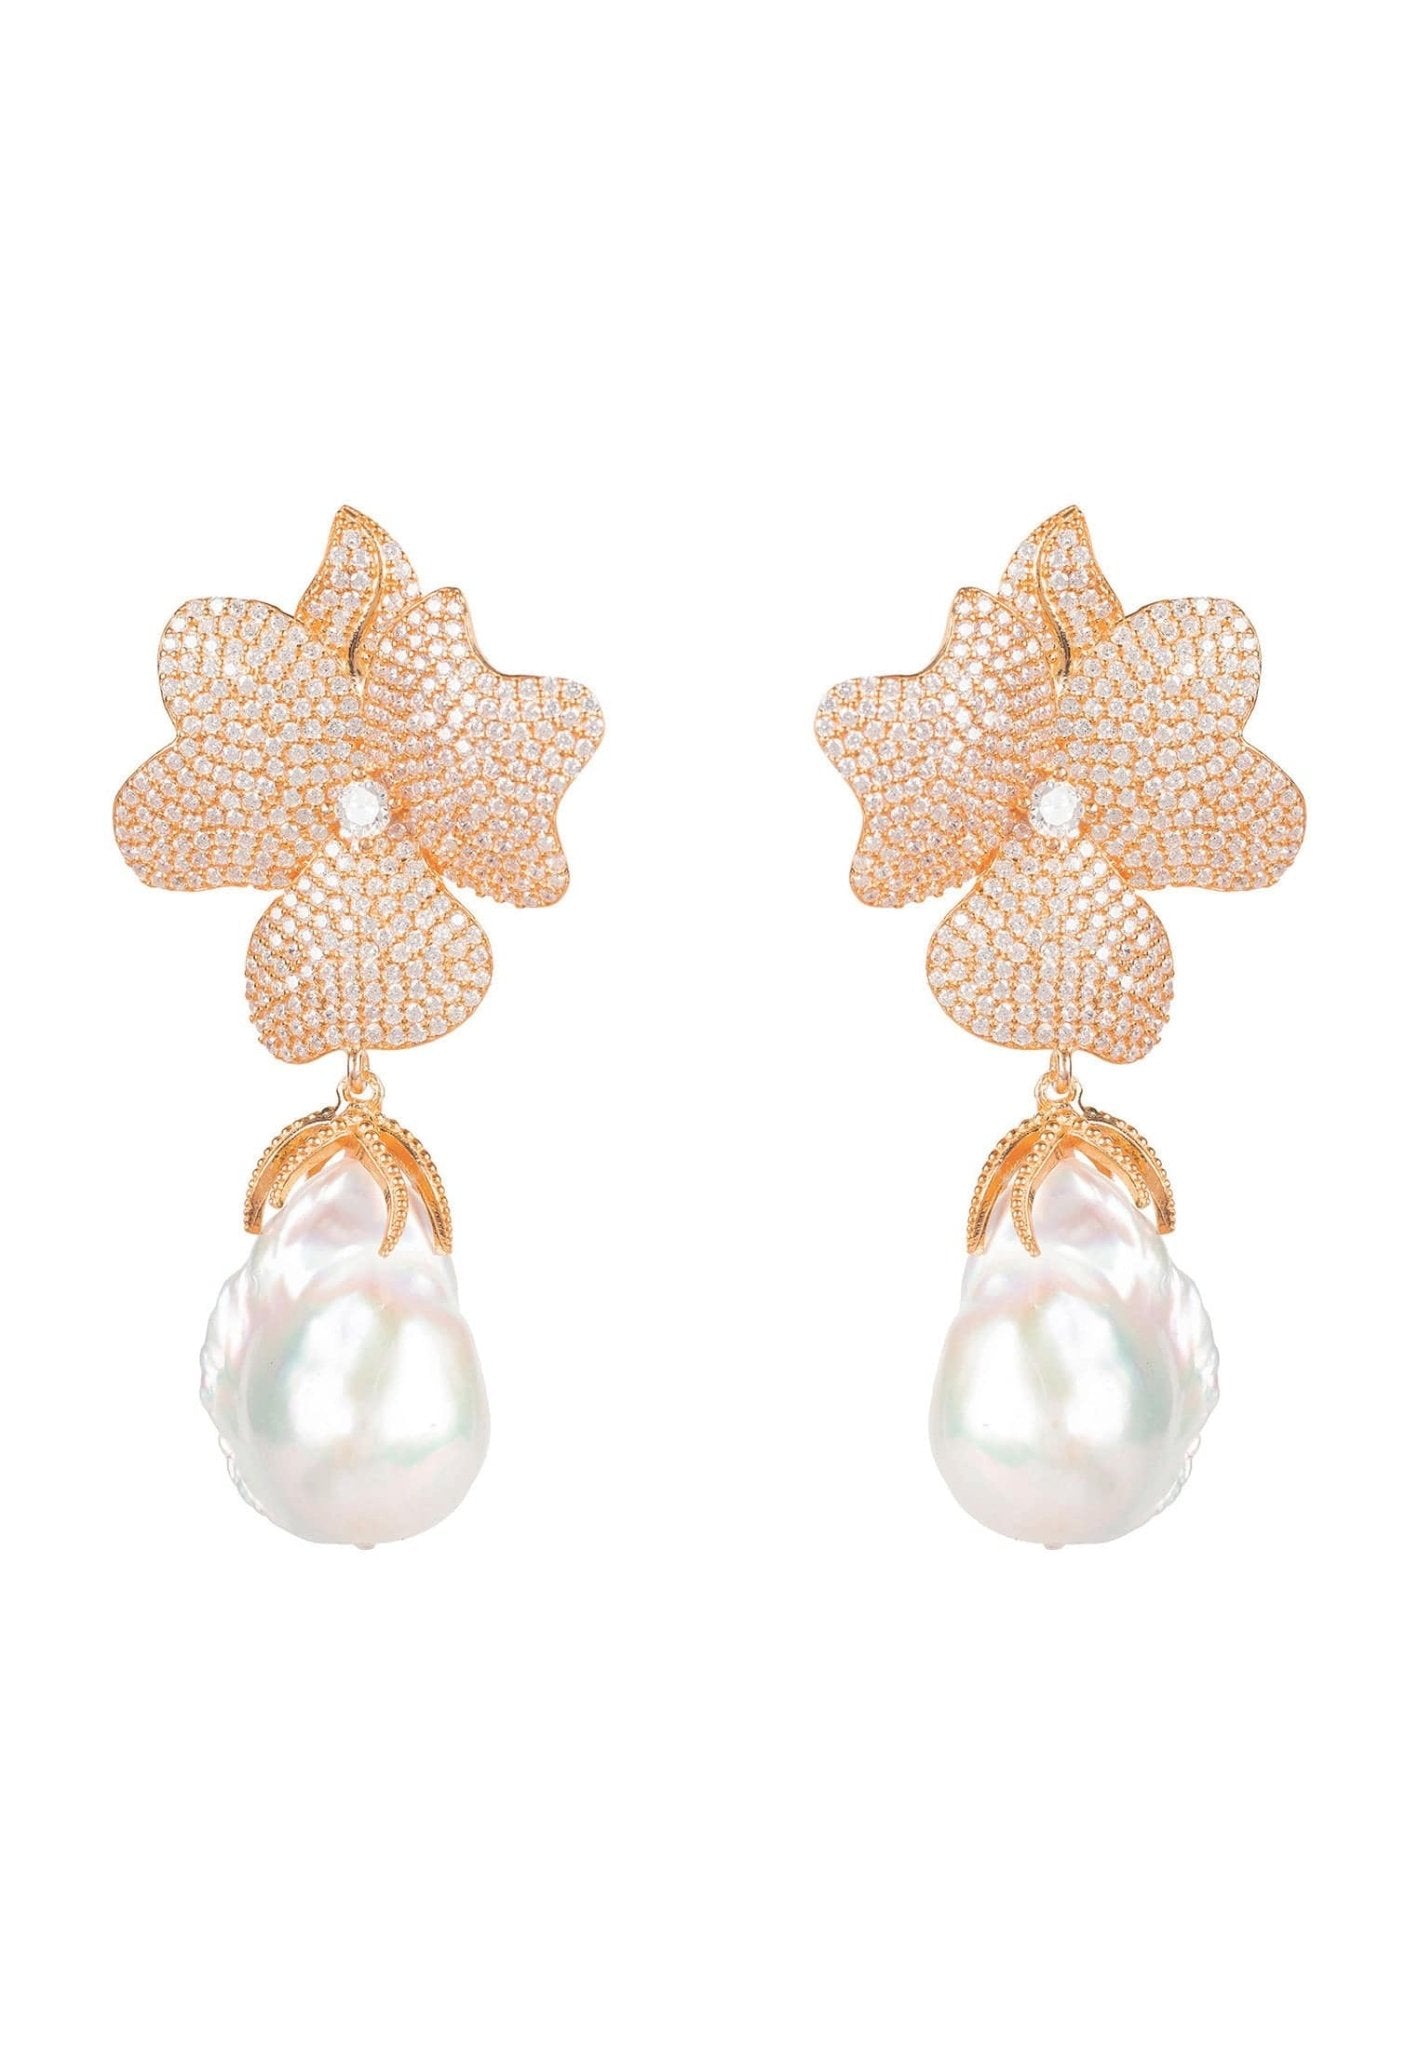 Baroque Pearl White Flower Drop Earrings Rosegold - LATELITA Earrings